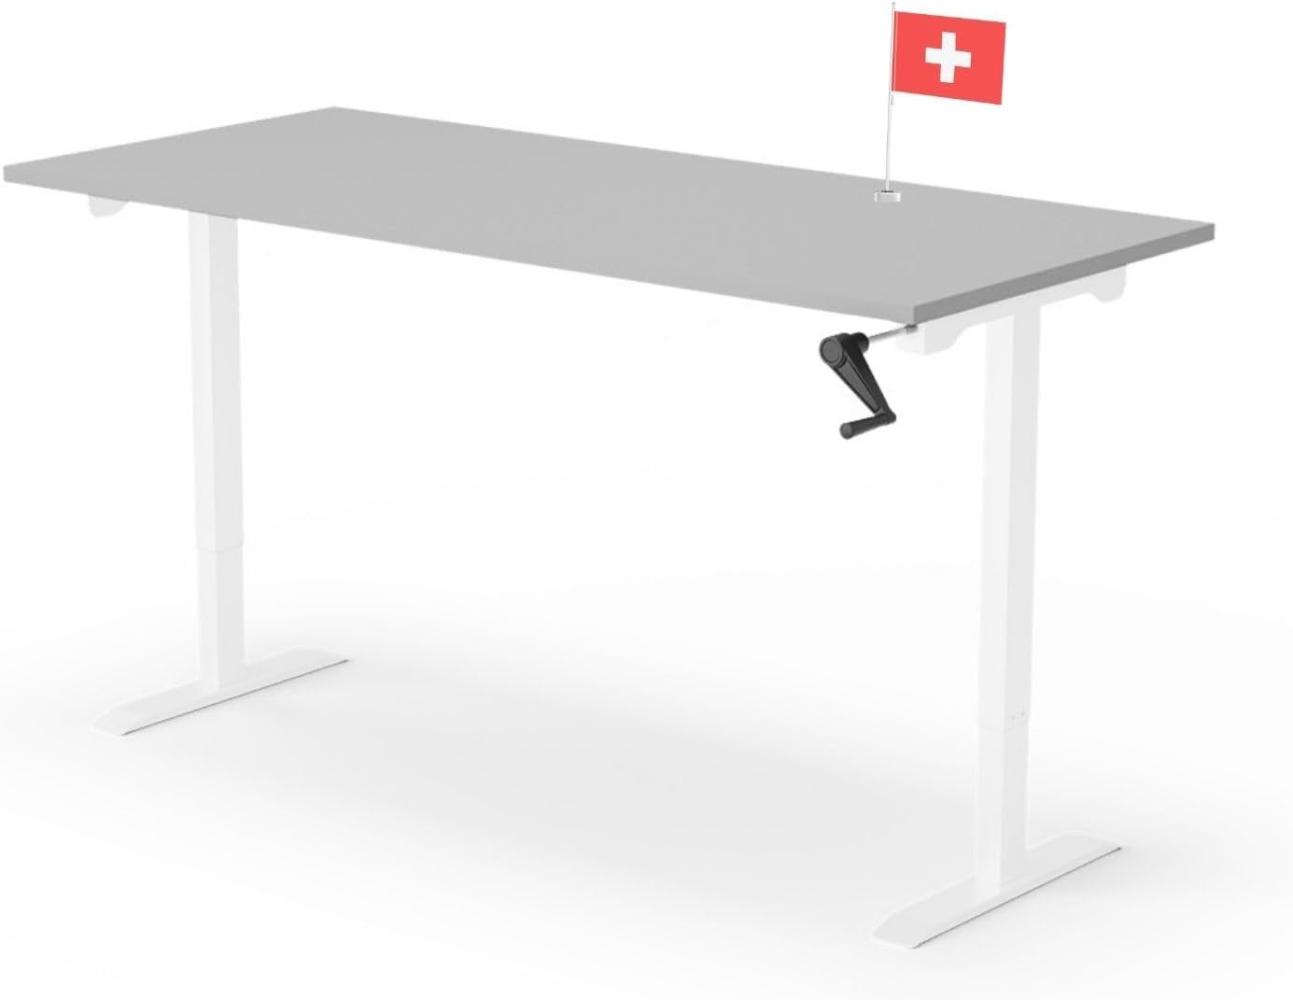 manuell höhenverstellbarer Schreibtisch EASY 180 x 80 cm - Gestell Weiss, Platte Grau Bild 1